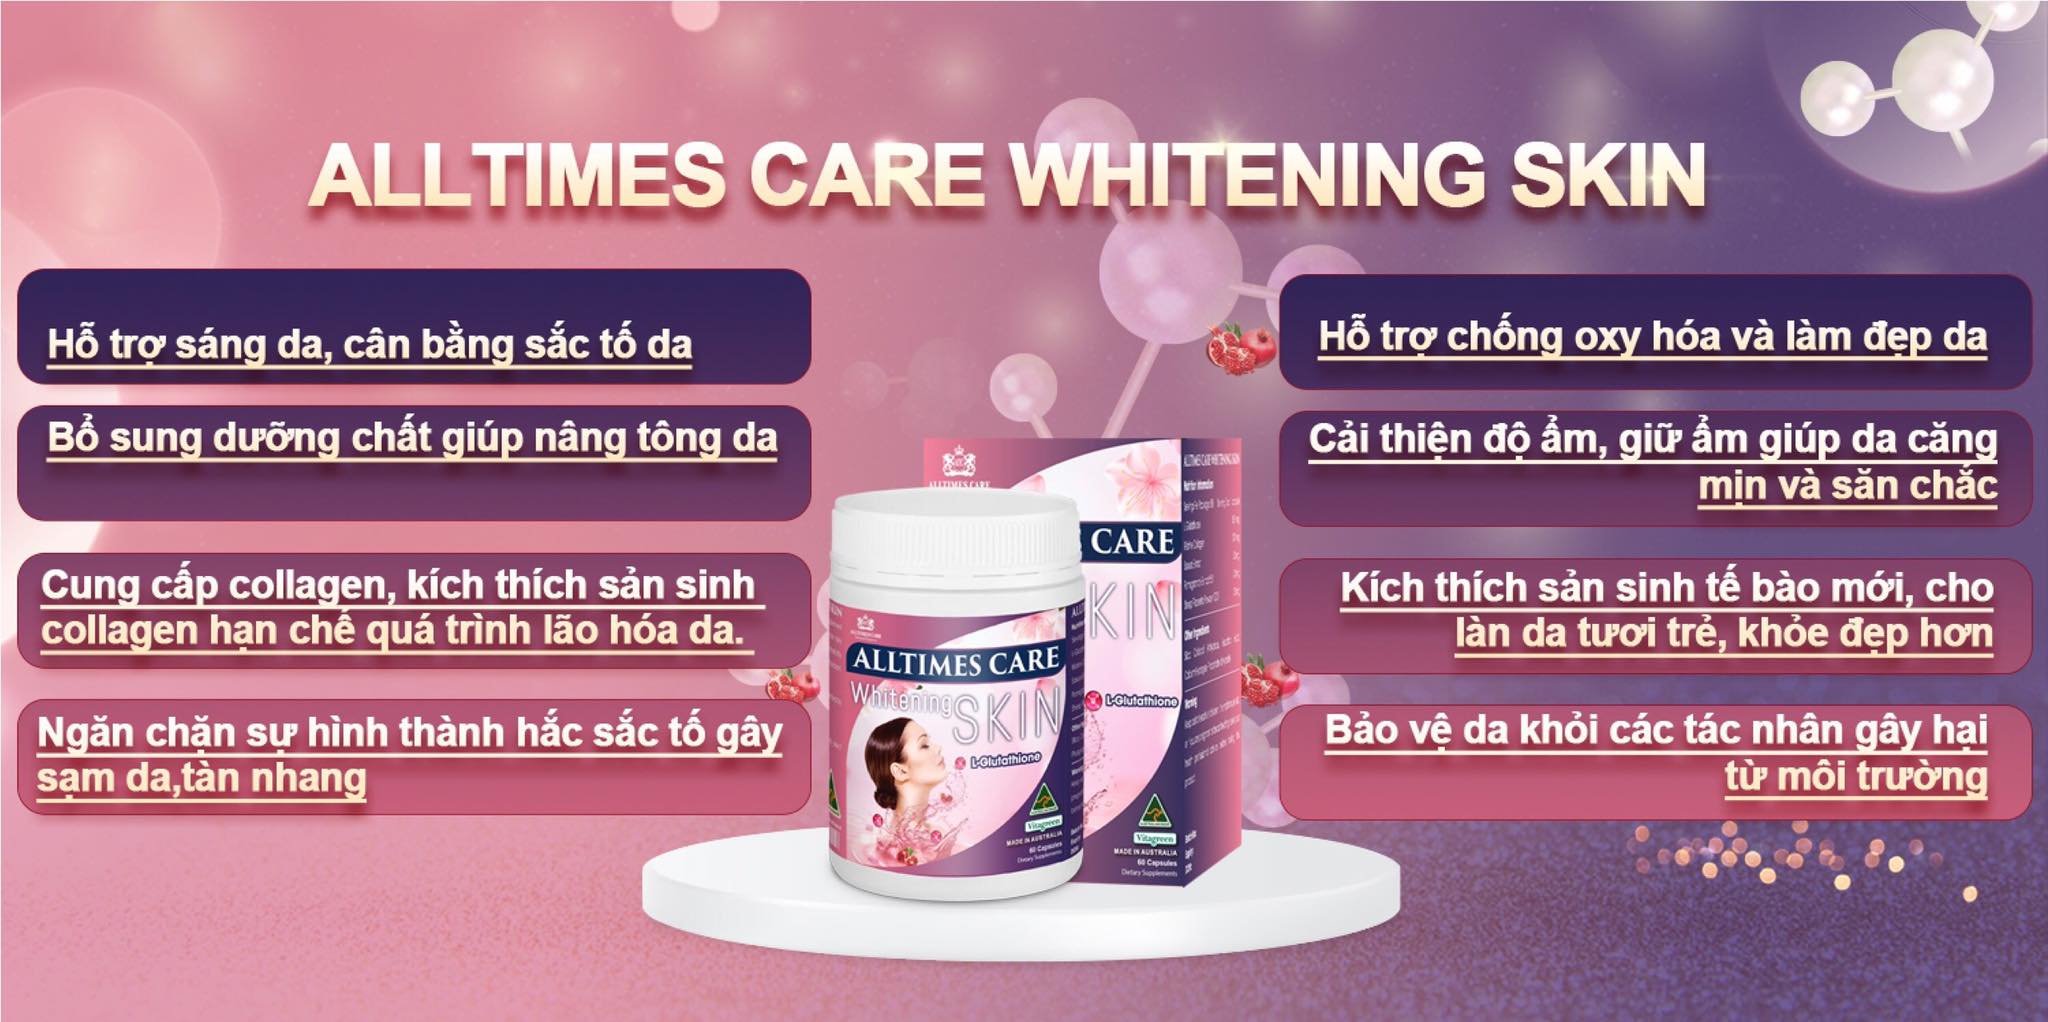 Công dụng tuyệt vời của Alltimes Care Whitening Skin 